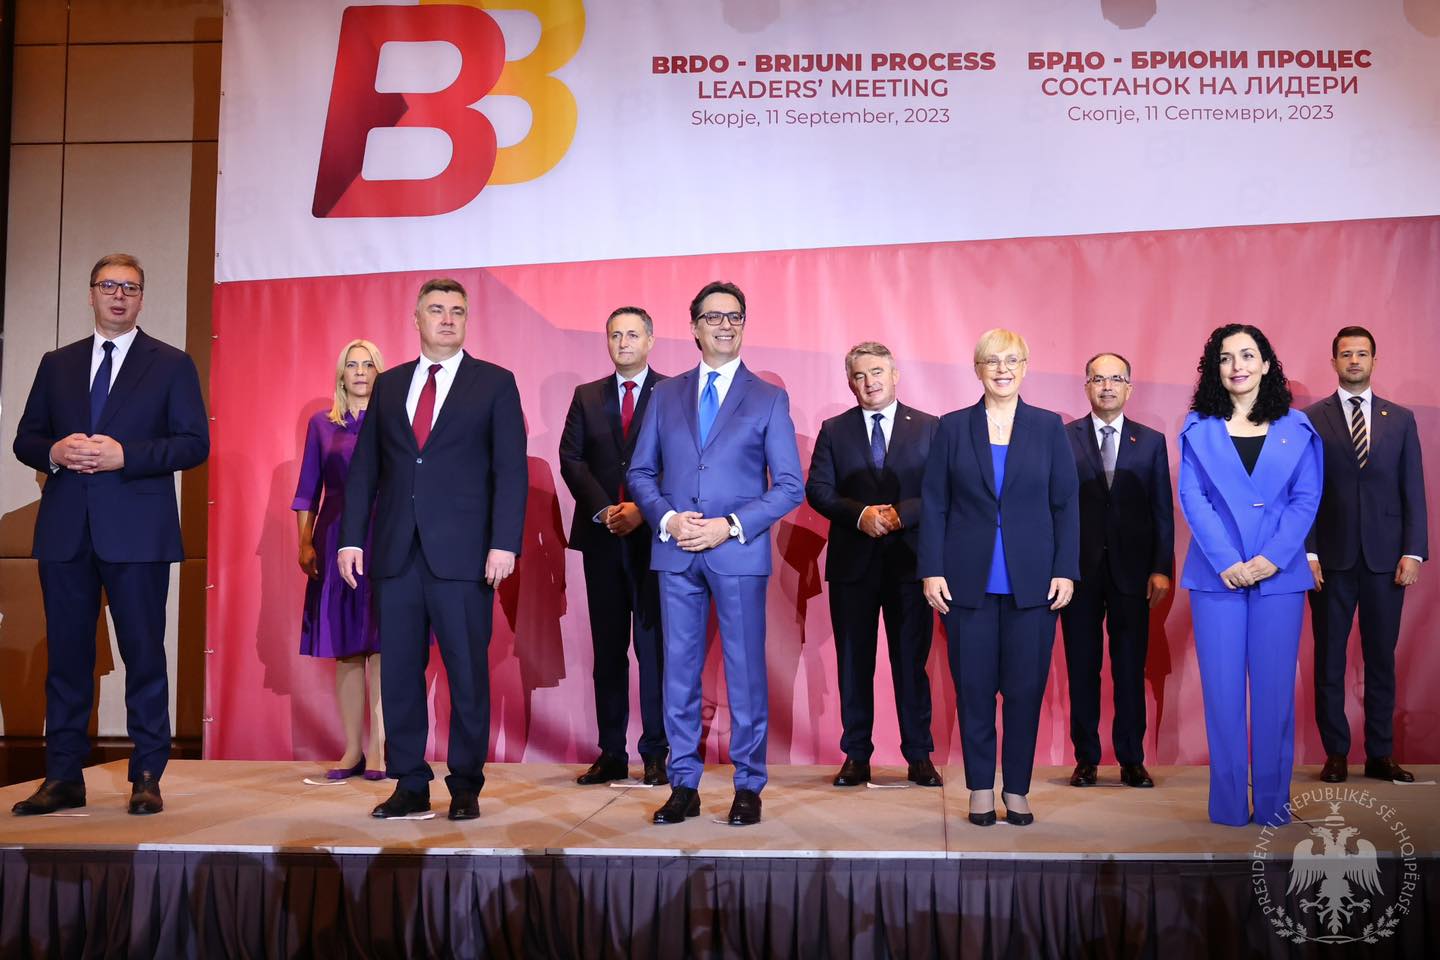 Земље Западног Балкана зацртале курс за улазак у ЕУ до 2030. године – резултати 12. самита Брдо-Бријуни